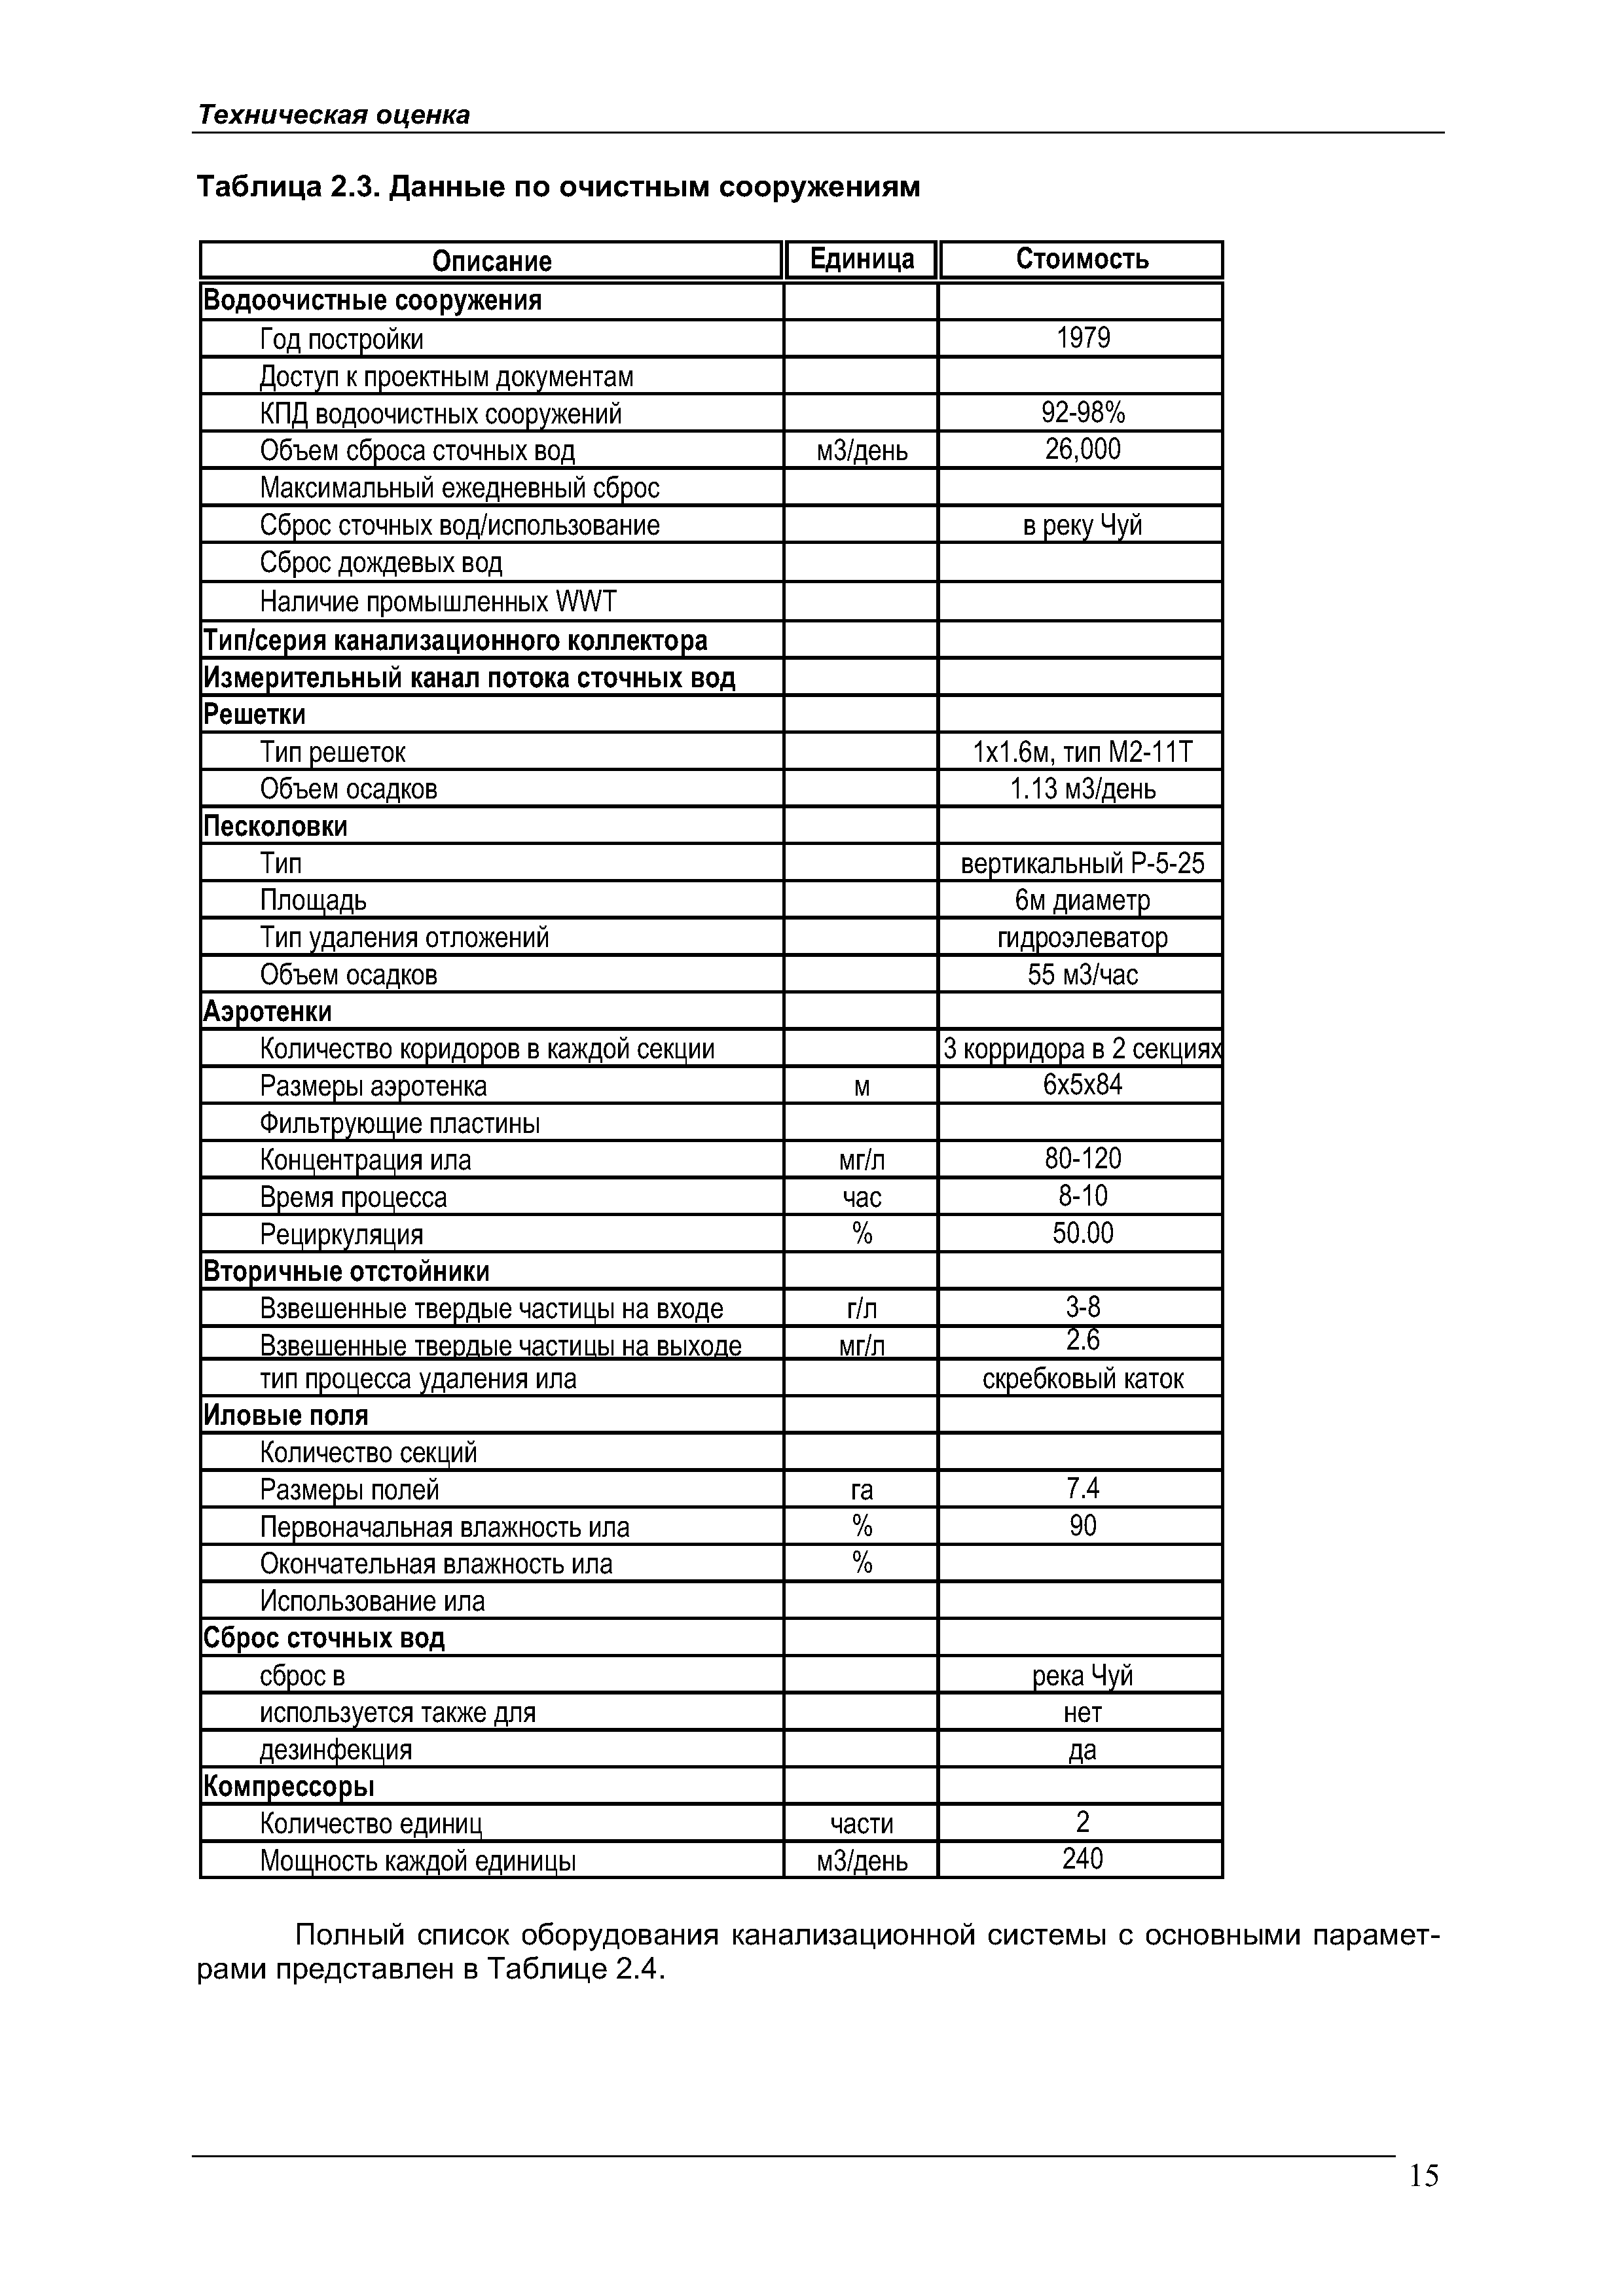 Таблица 2.3. Данные по очистным сооружениям
